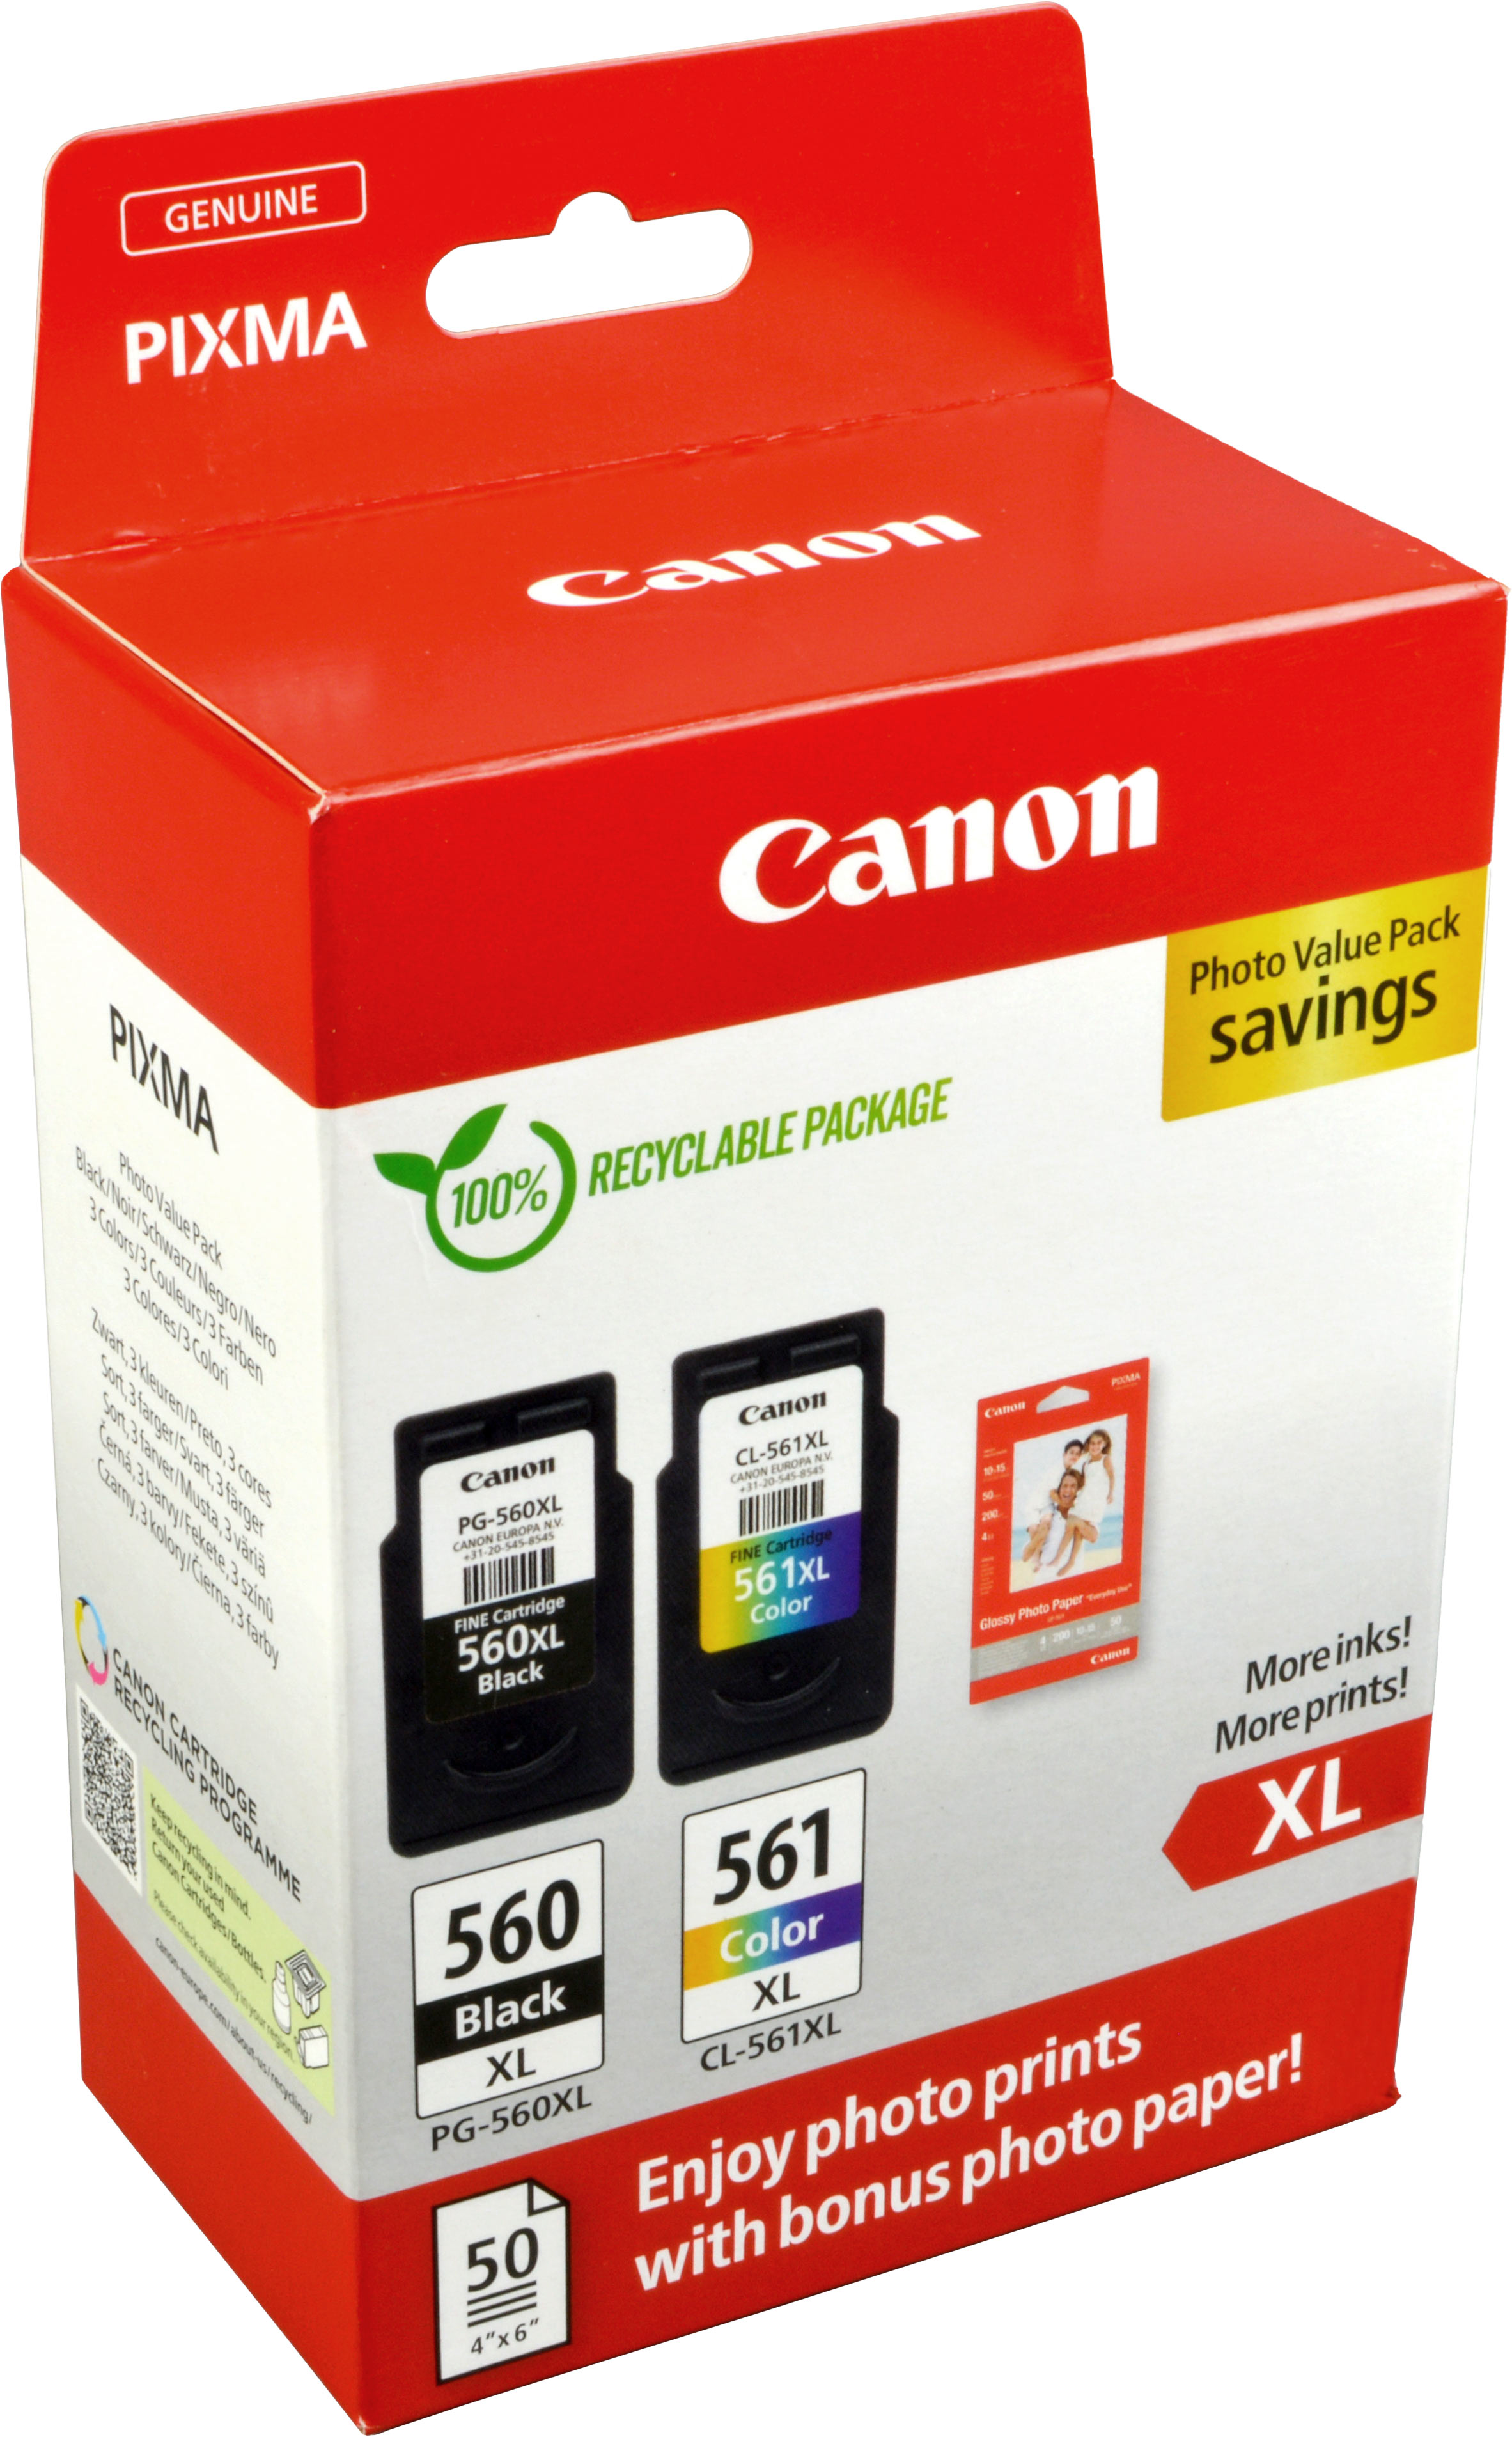 2 Canon Tinten 3712C004  PG-560XL + CL-561XL  4-farbig + Papier